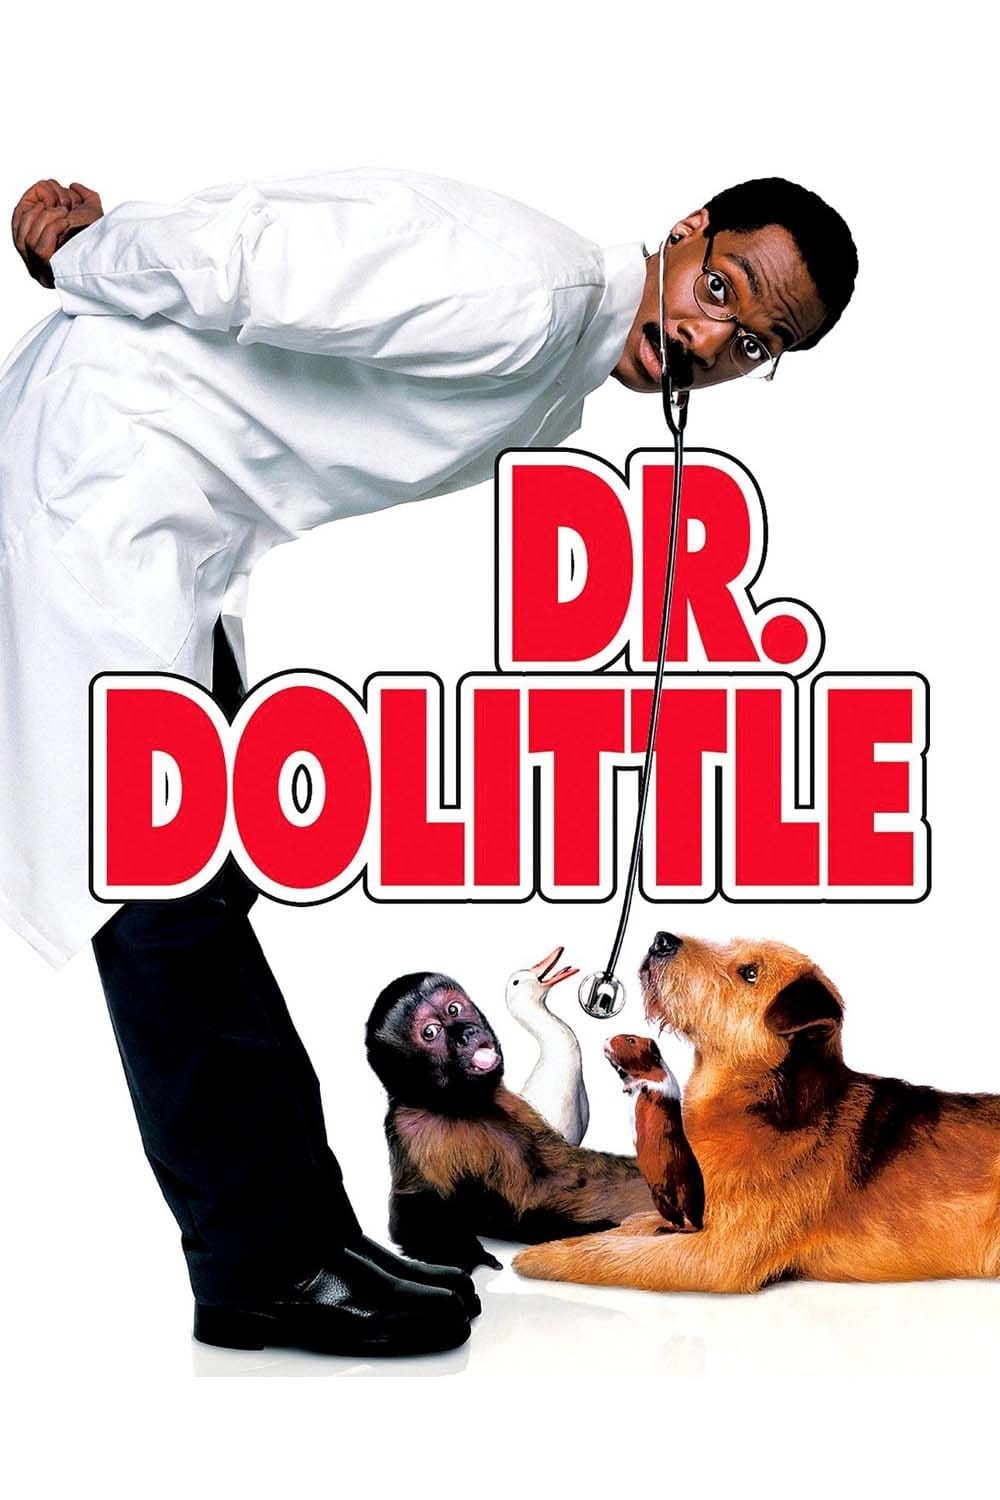 ดูหนังออนไลน์ฟรี Doctor Dolittle ด็อกเตอร์จ้อ สื่อสัตว์โลกมหัศจรรย์